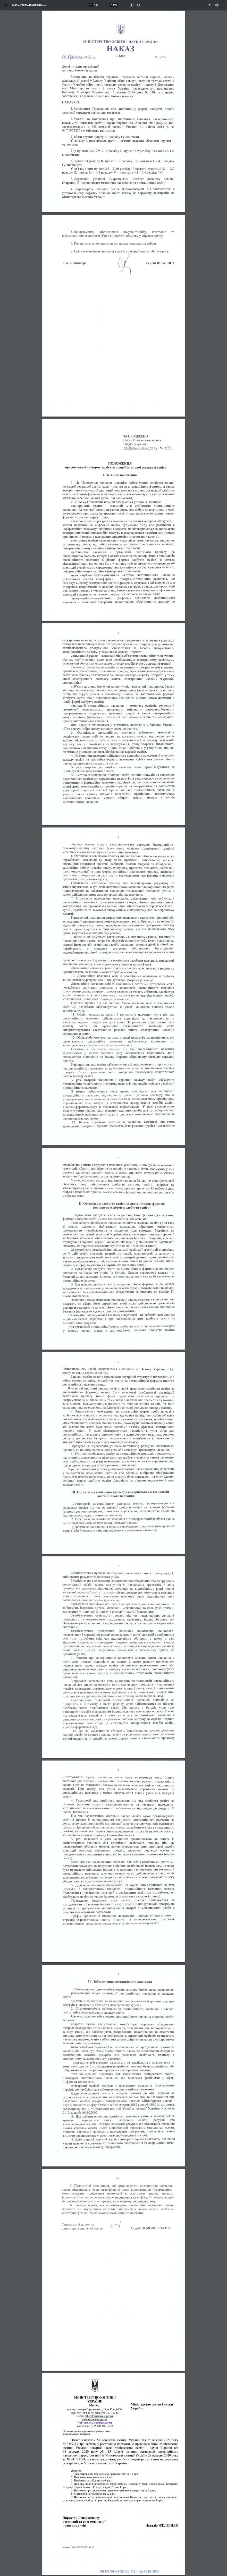 https://mon.gov.ua/ua/npa/deyaki-pitannya-organizaciyi-distancijnogo-navchannya-zareyestrovano-v-ministerstvi-yusticiyi-ukrayini-94735224-vid-28-veresnya-2020-roku